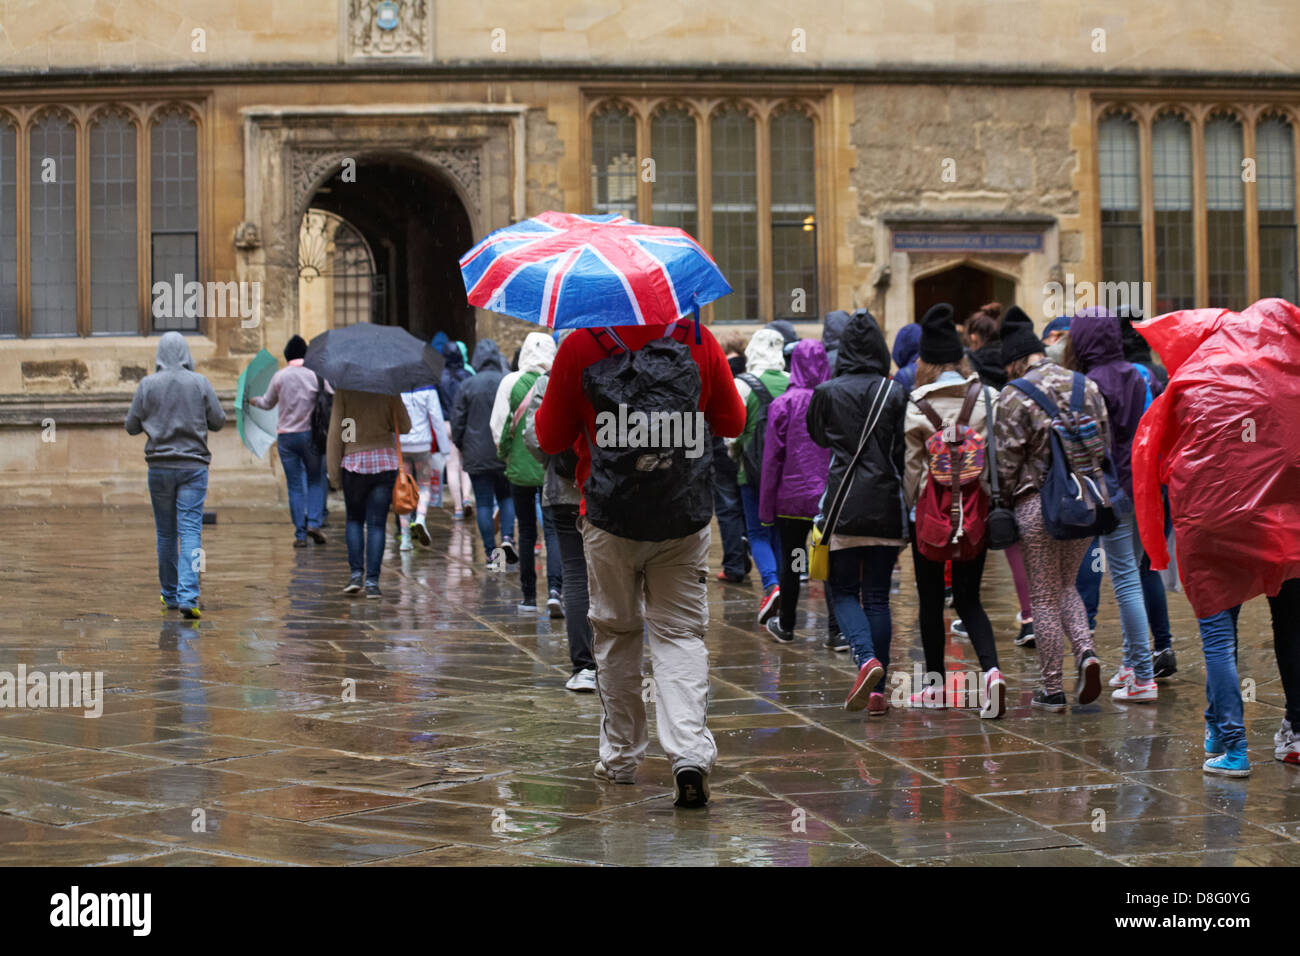 Touristes sous la pluie à l'extérieur de la bibliothèque Bodleian Old Schools Quadrangle Oxford University, Oxford, Oxfordshire Royaume-Uni lors d'une pluie humide jour en mai Banque D'Images